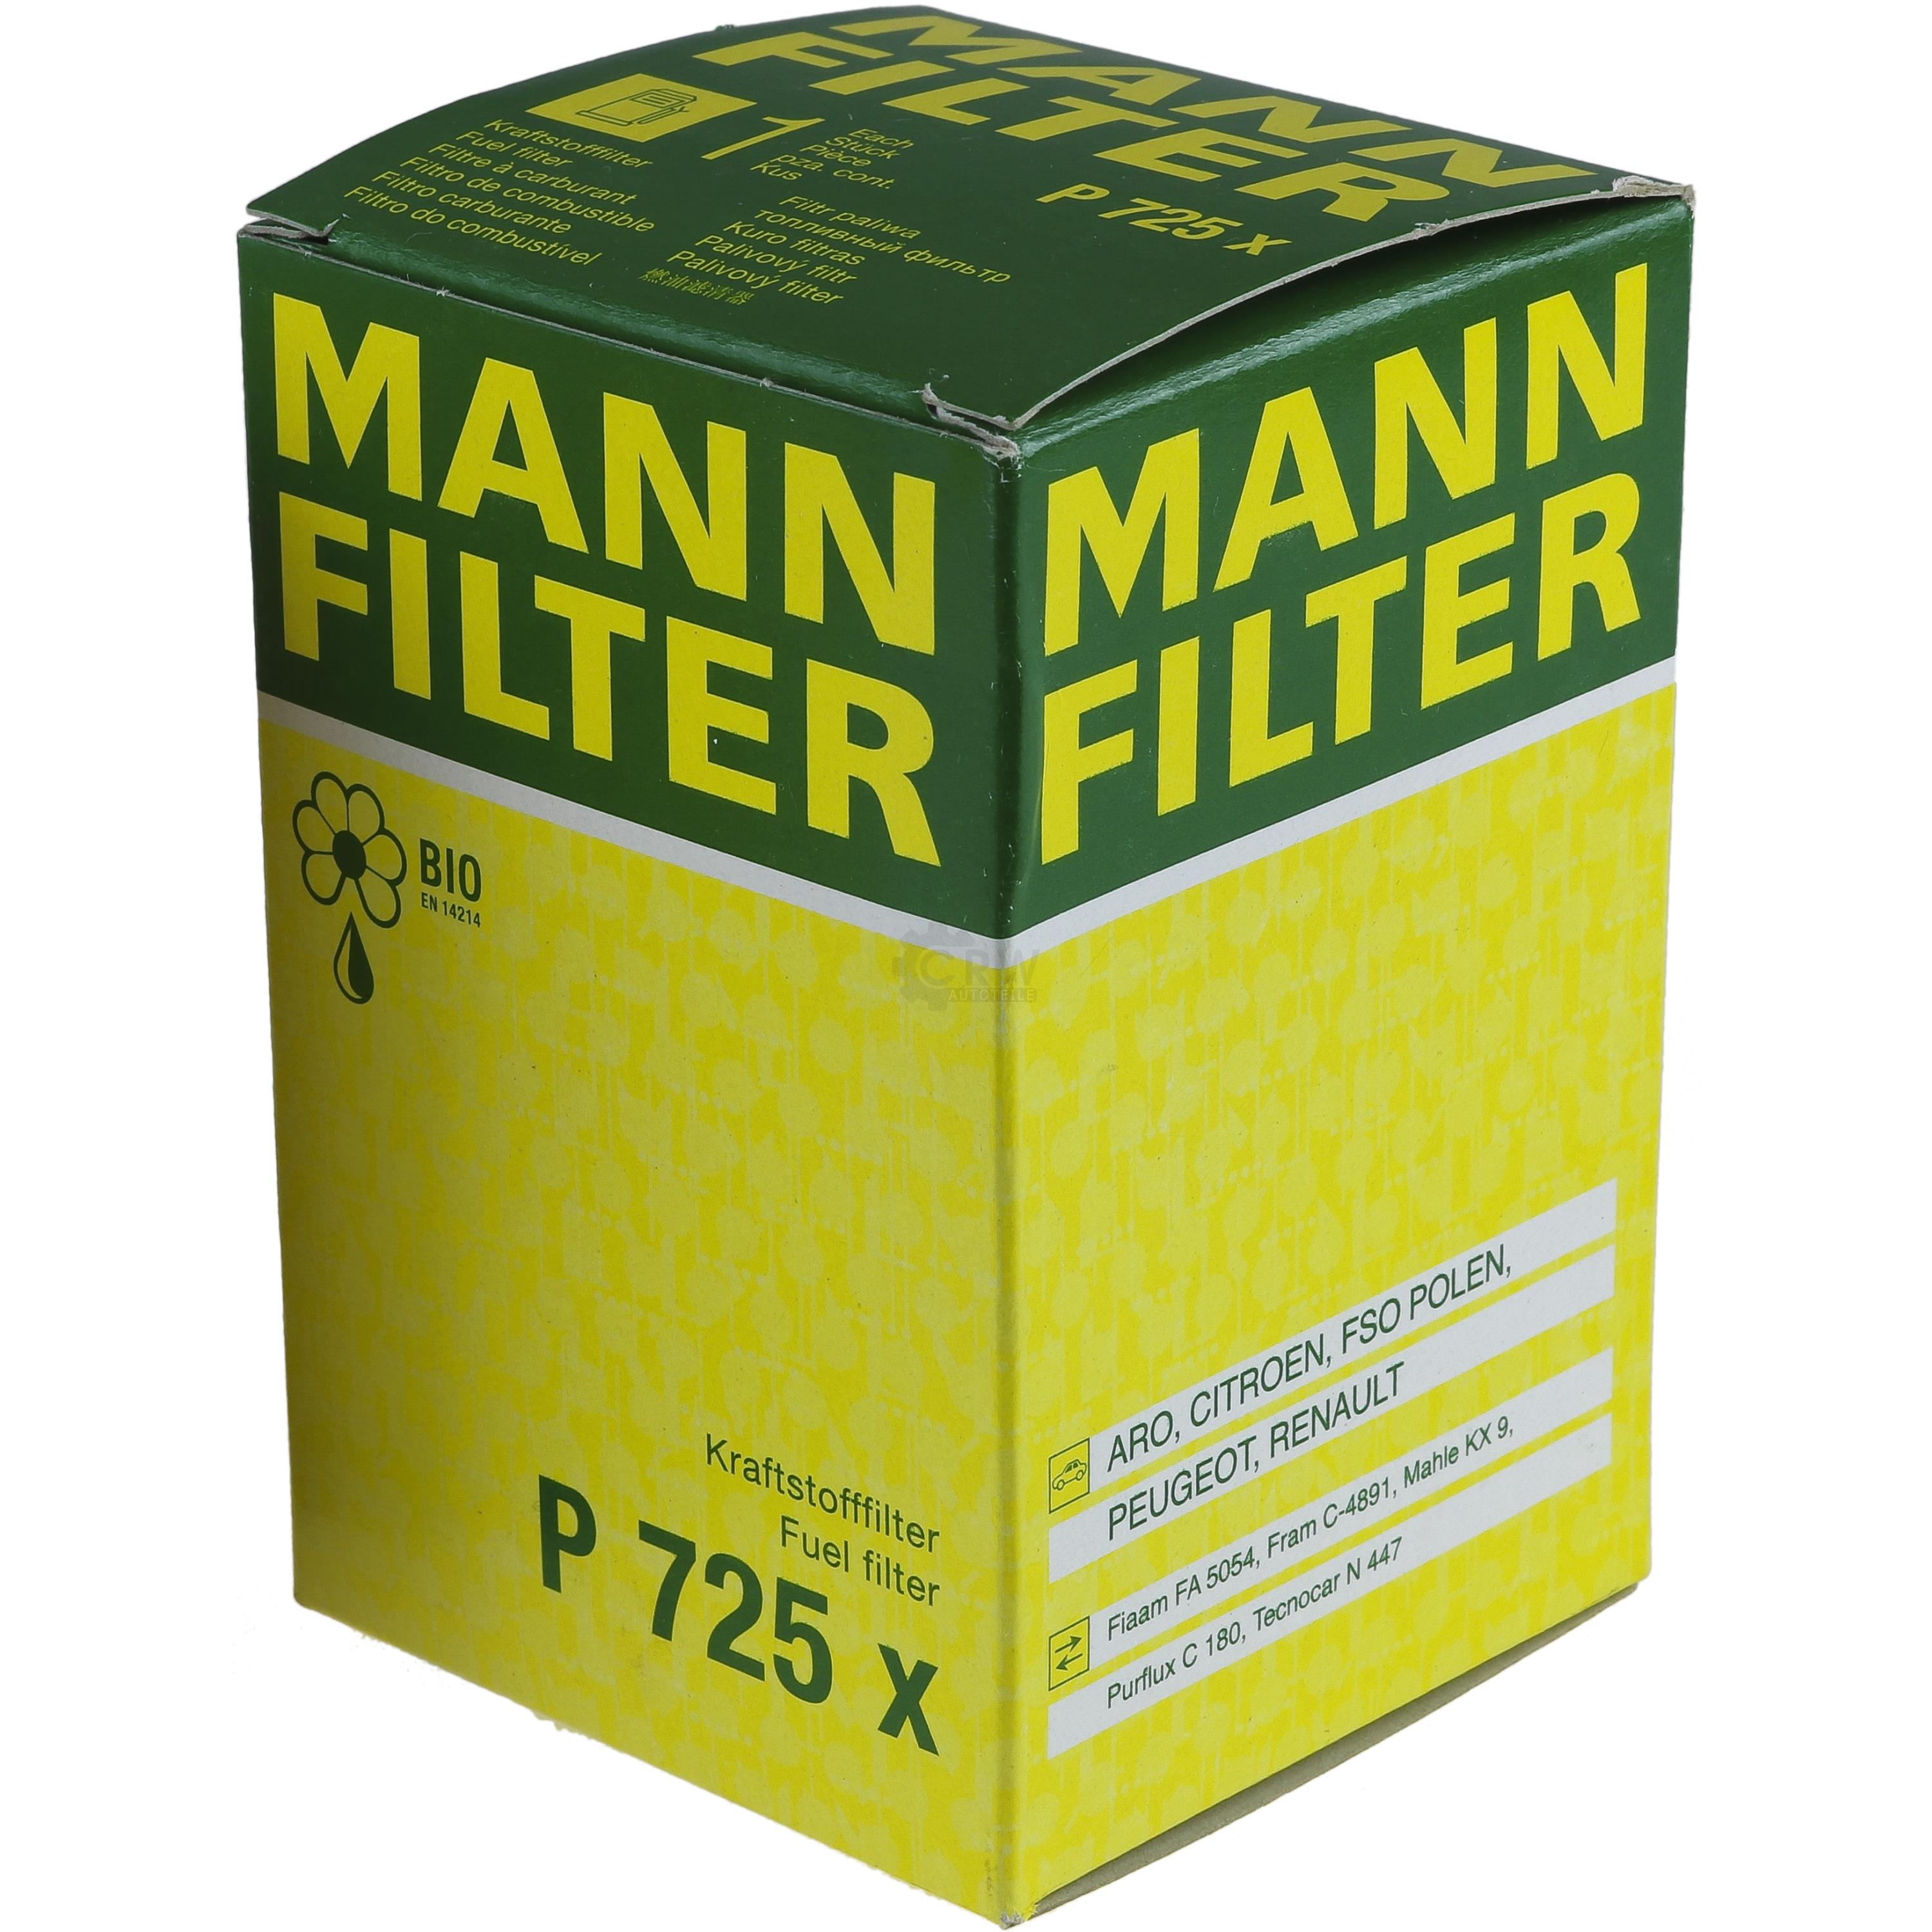 MANN-FILTER Kraftstofffilter P 725 x Fuel Filter